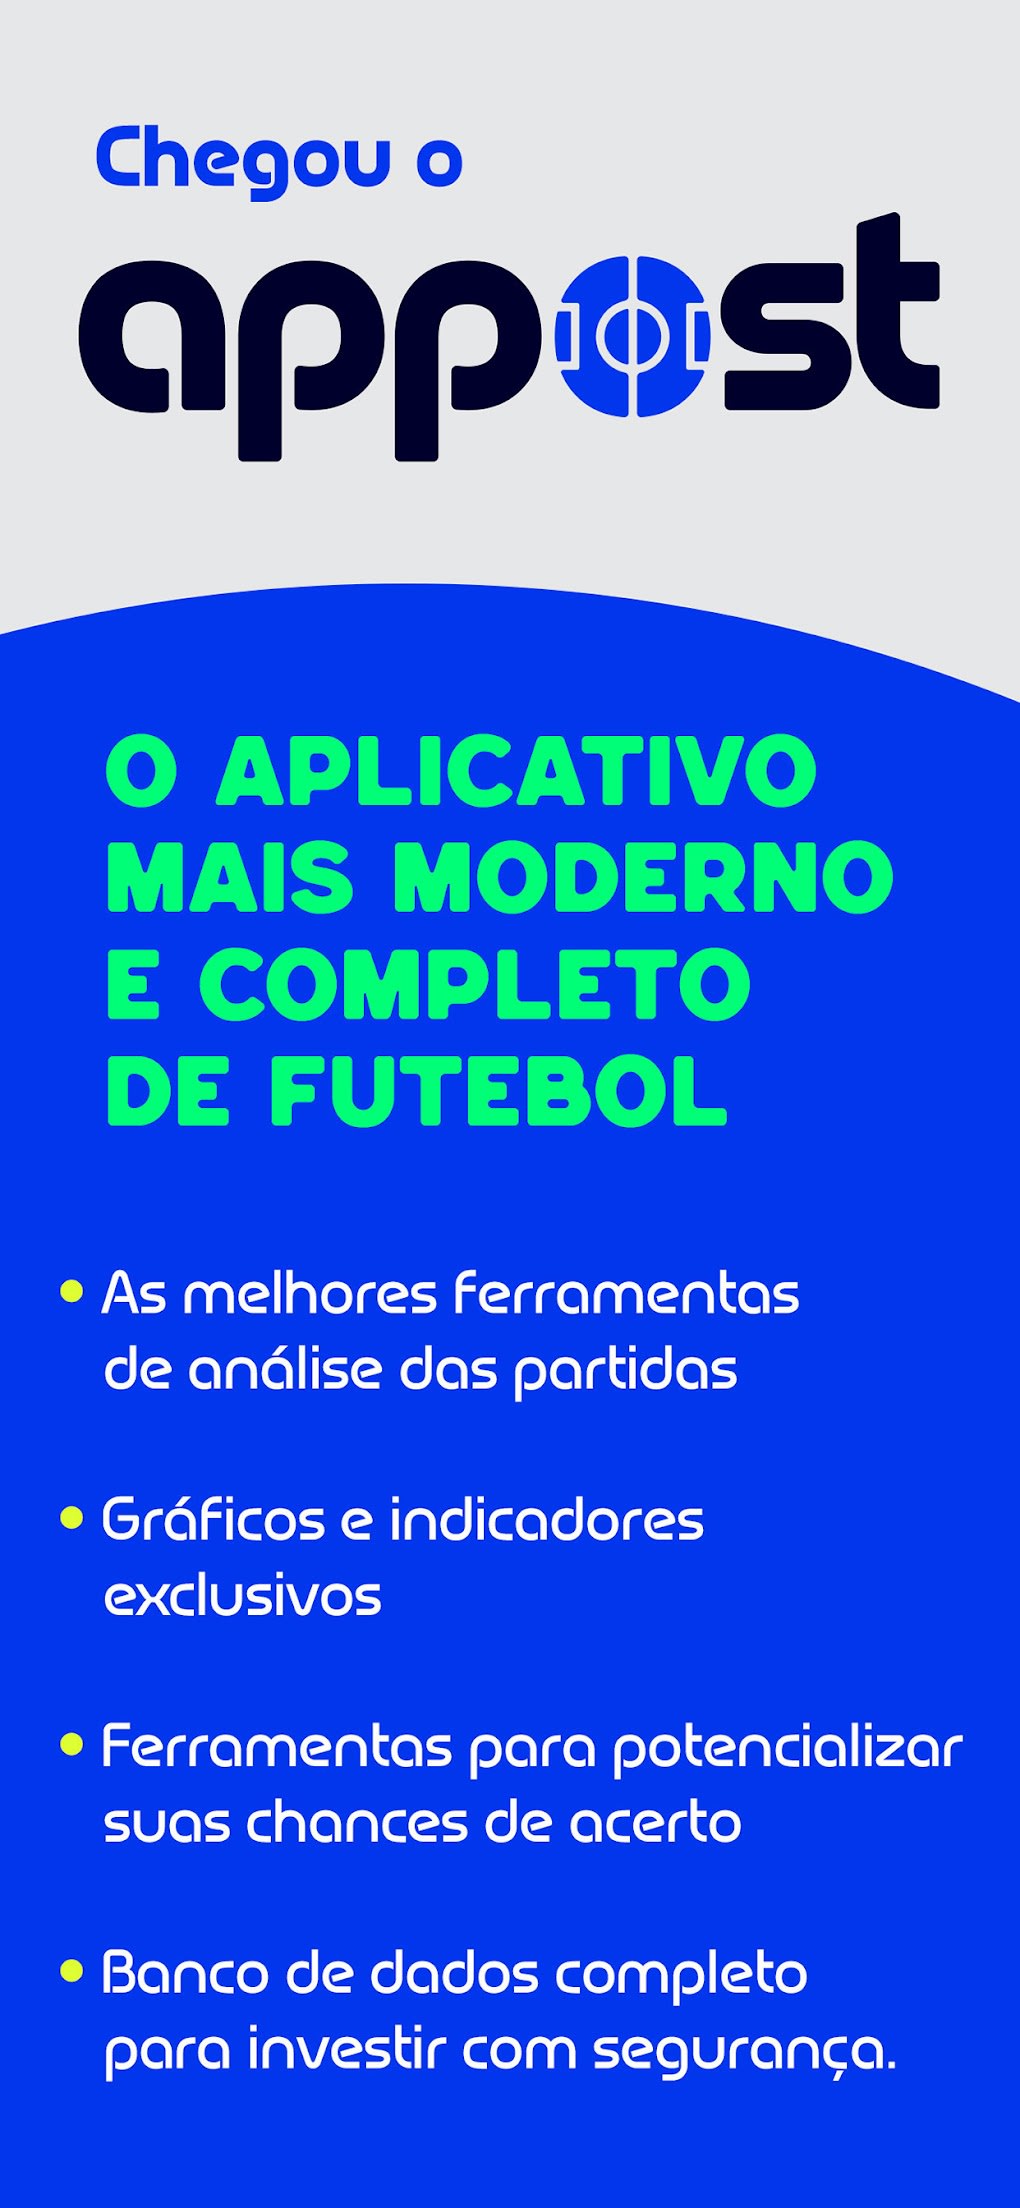 Appost - Dicas de Futebol - UL